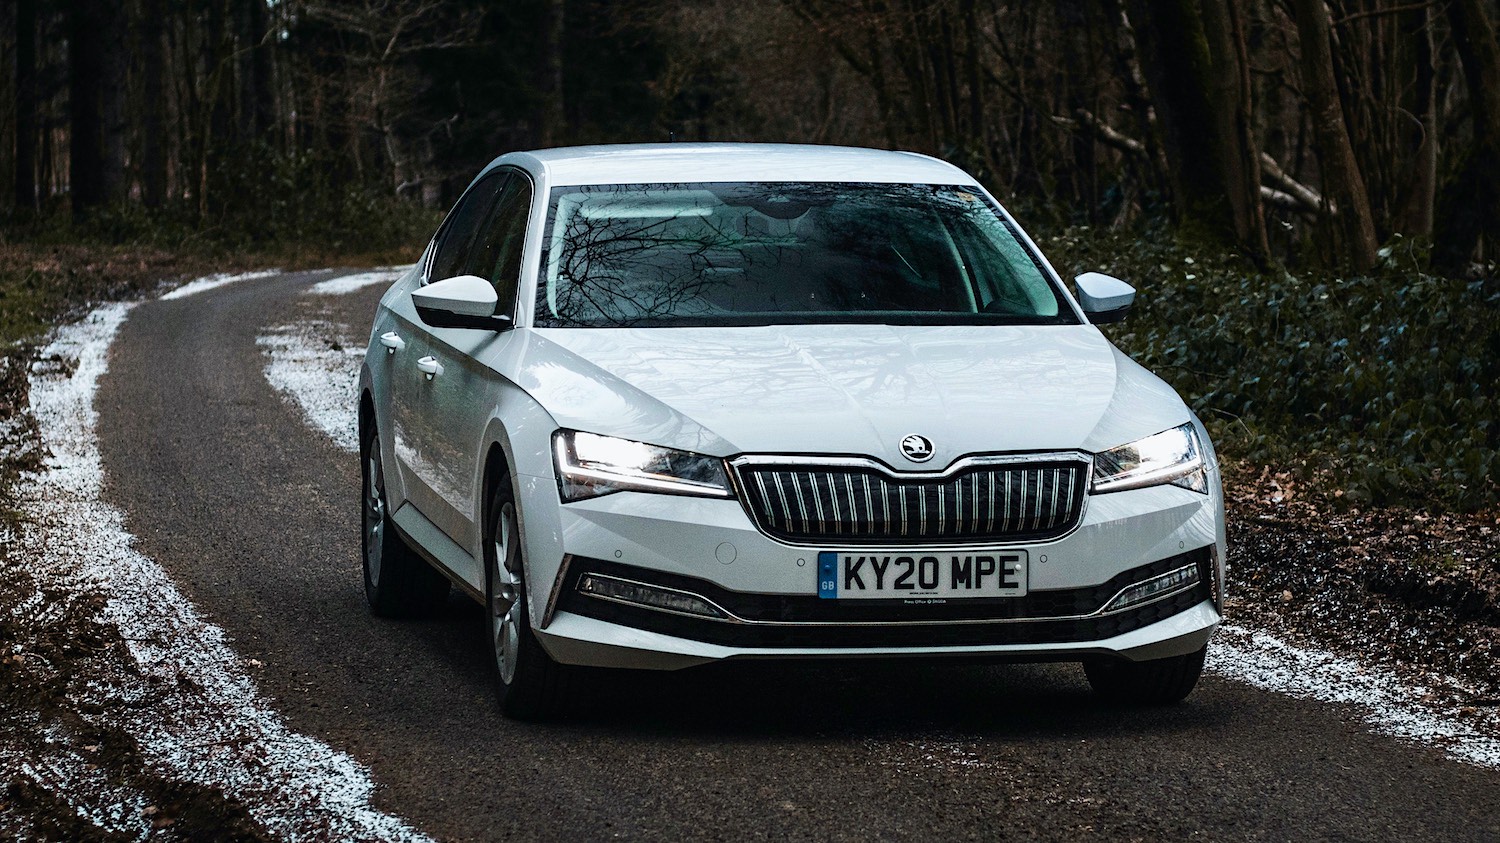  Car Reviews - Škoda Superb iV SE Technology Hatch, check it  out